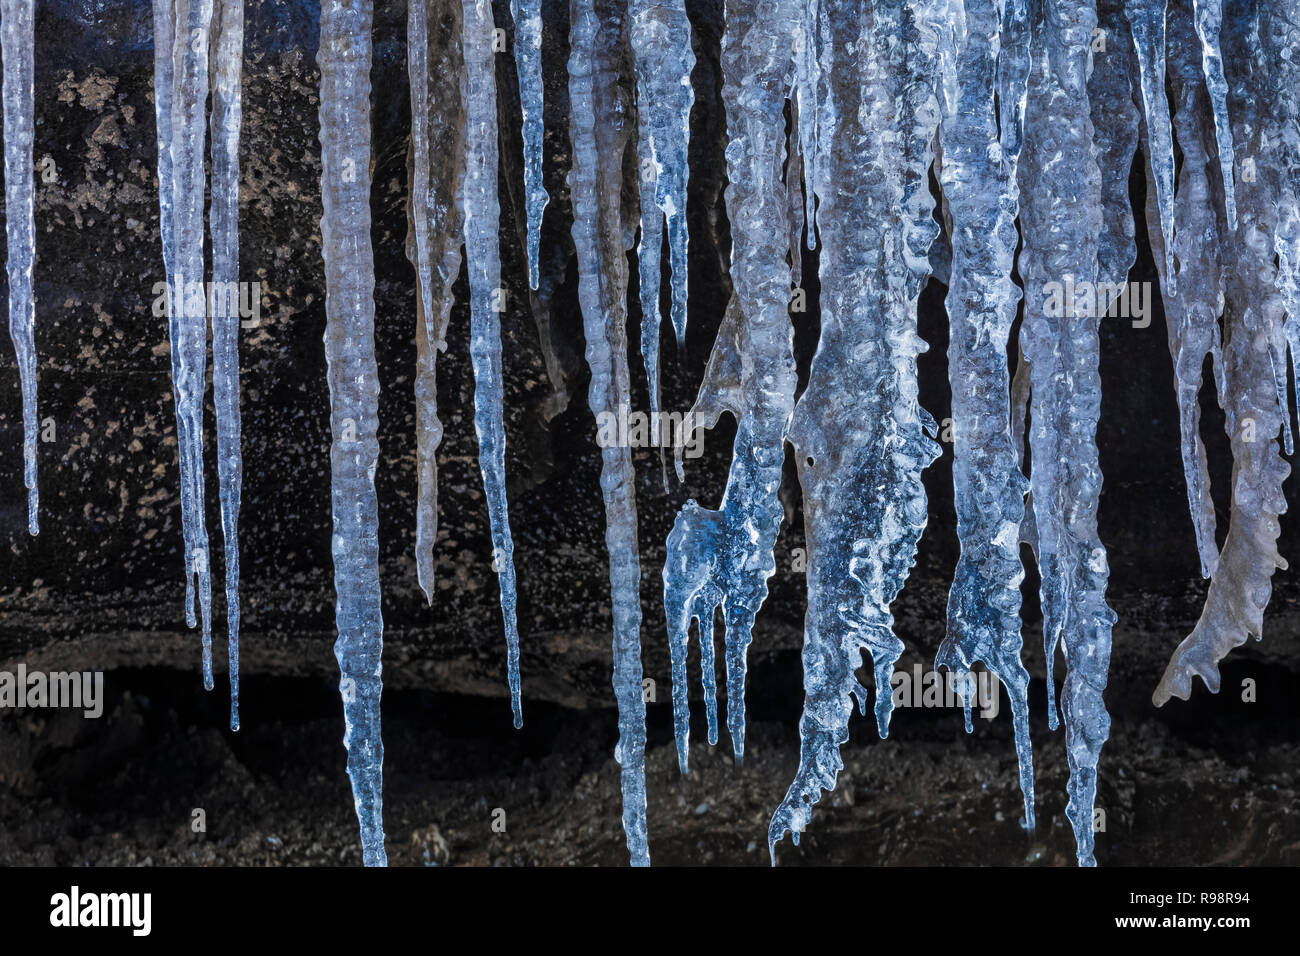 Ghiaccioli all'entrata di una caverna di ghiaccio in un lobo del ghiacciaio Mýrdalsjökull, che siede in cima al vulcano Katla, in inverno in Islanda Foto Stock